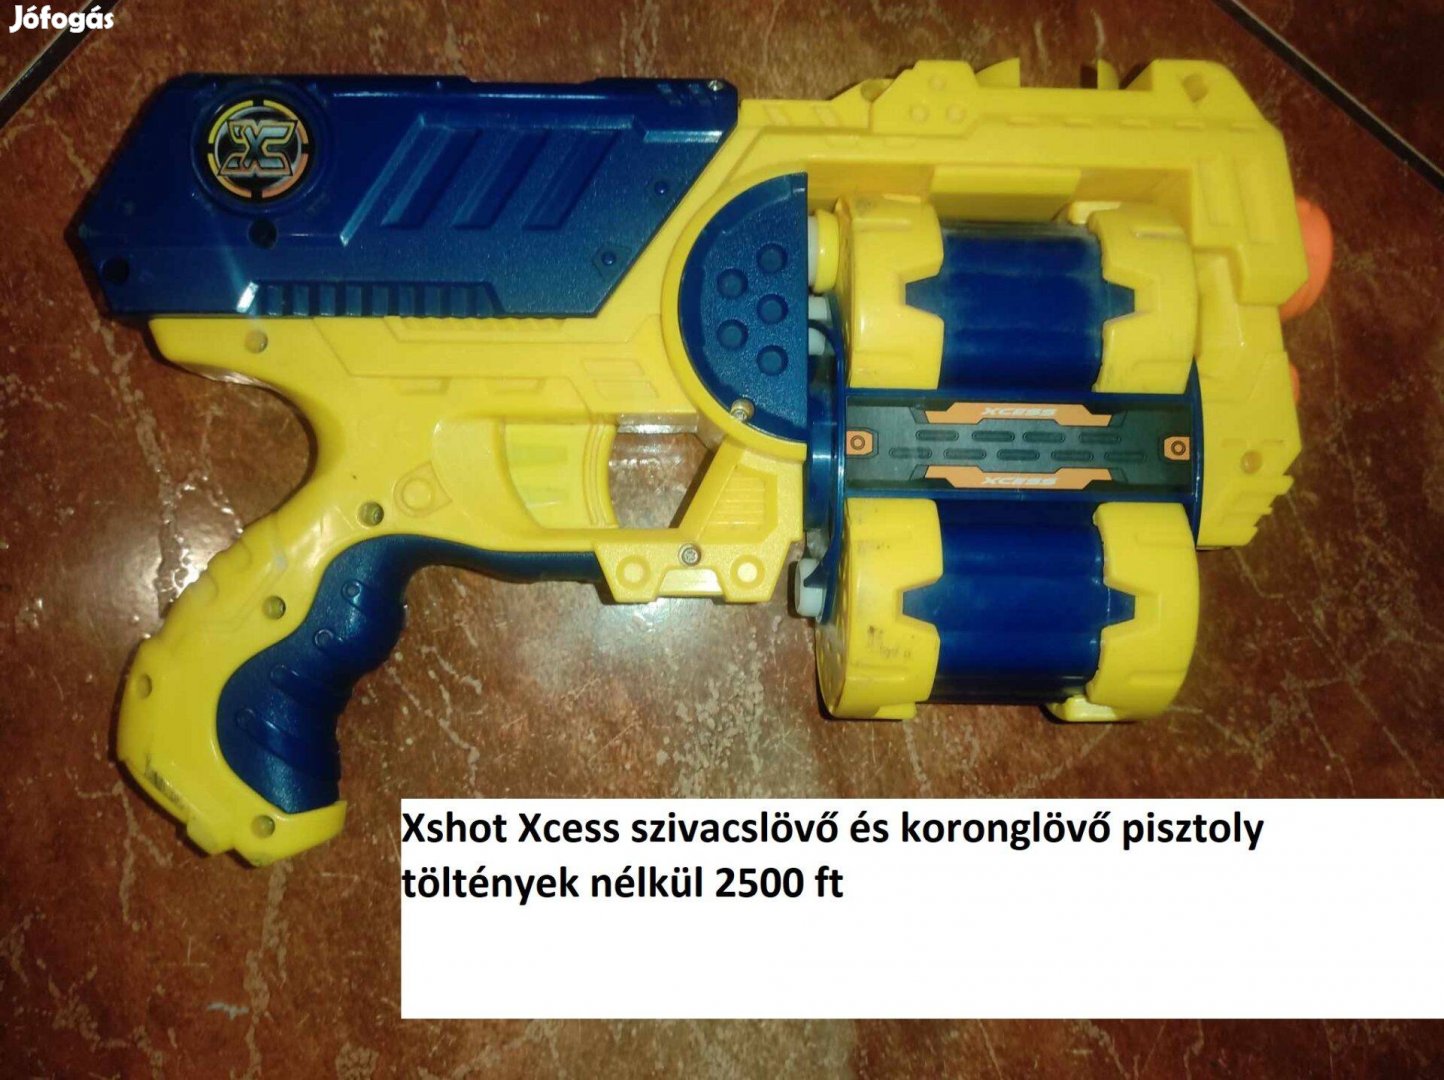 Xshot Xcess szivacslövő és koronglövő pisztoly 2500 ft